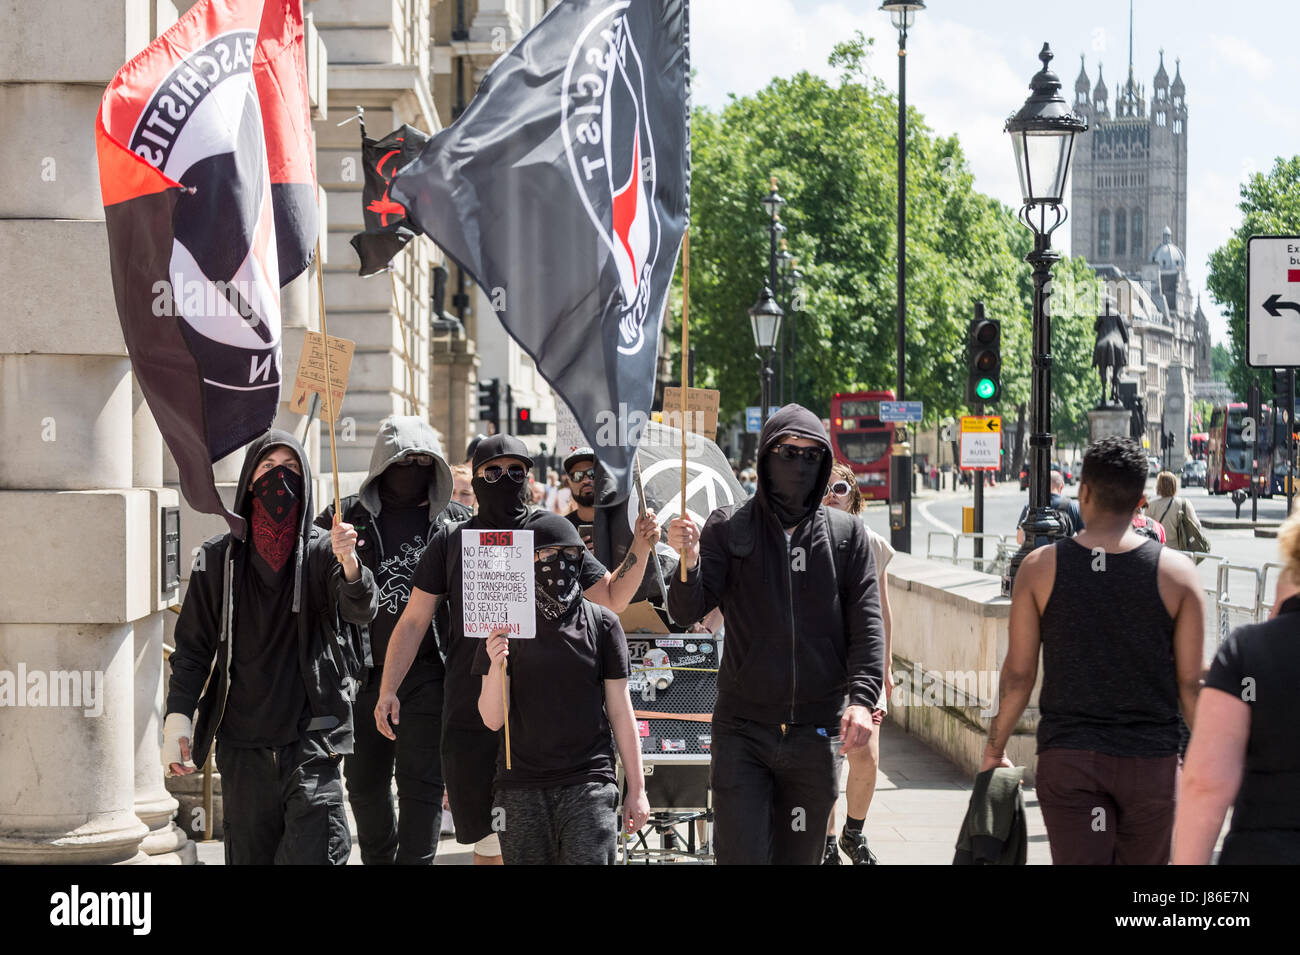 Londra, Regno Unito. 27 Maggio, 2017. Un piccolo gruppo di antifascisti e anarchici marzo attraverso Whitehall come parte di un anti-partito Tory protesta prima della prossima elezione generale. © Guy Corbishley/Alamy Live News Foto Stock